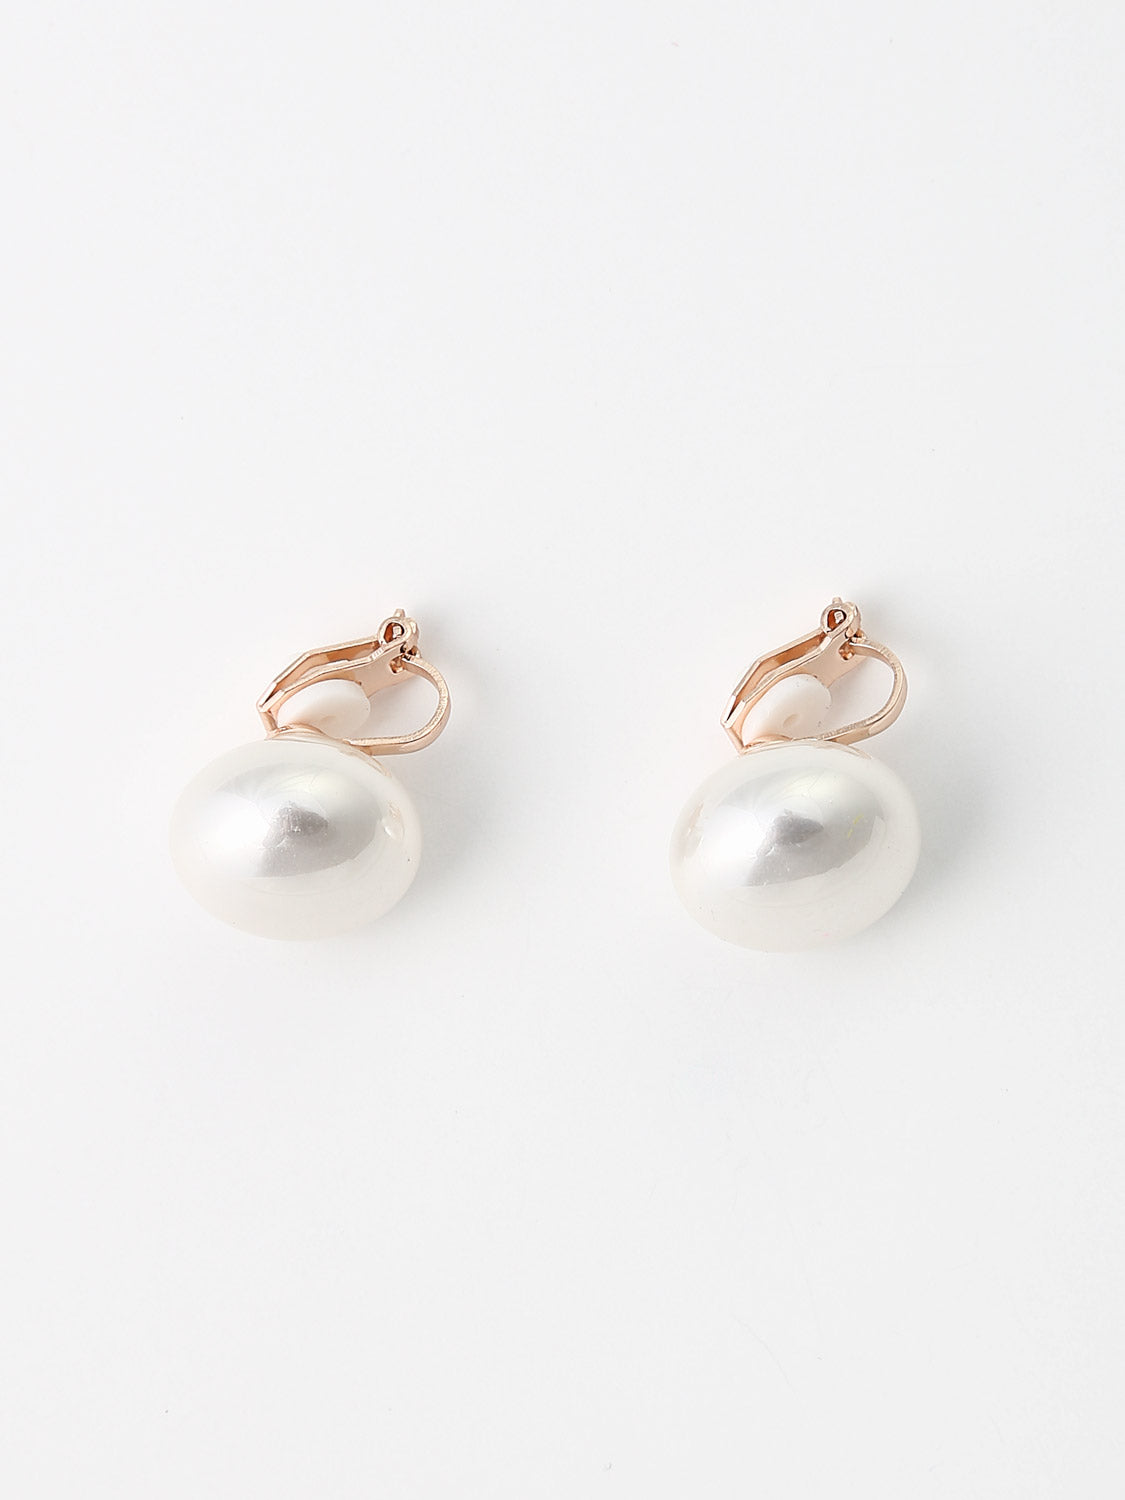 Abbi - White Pearl Earrings (Without Ear Pierced)